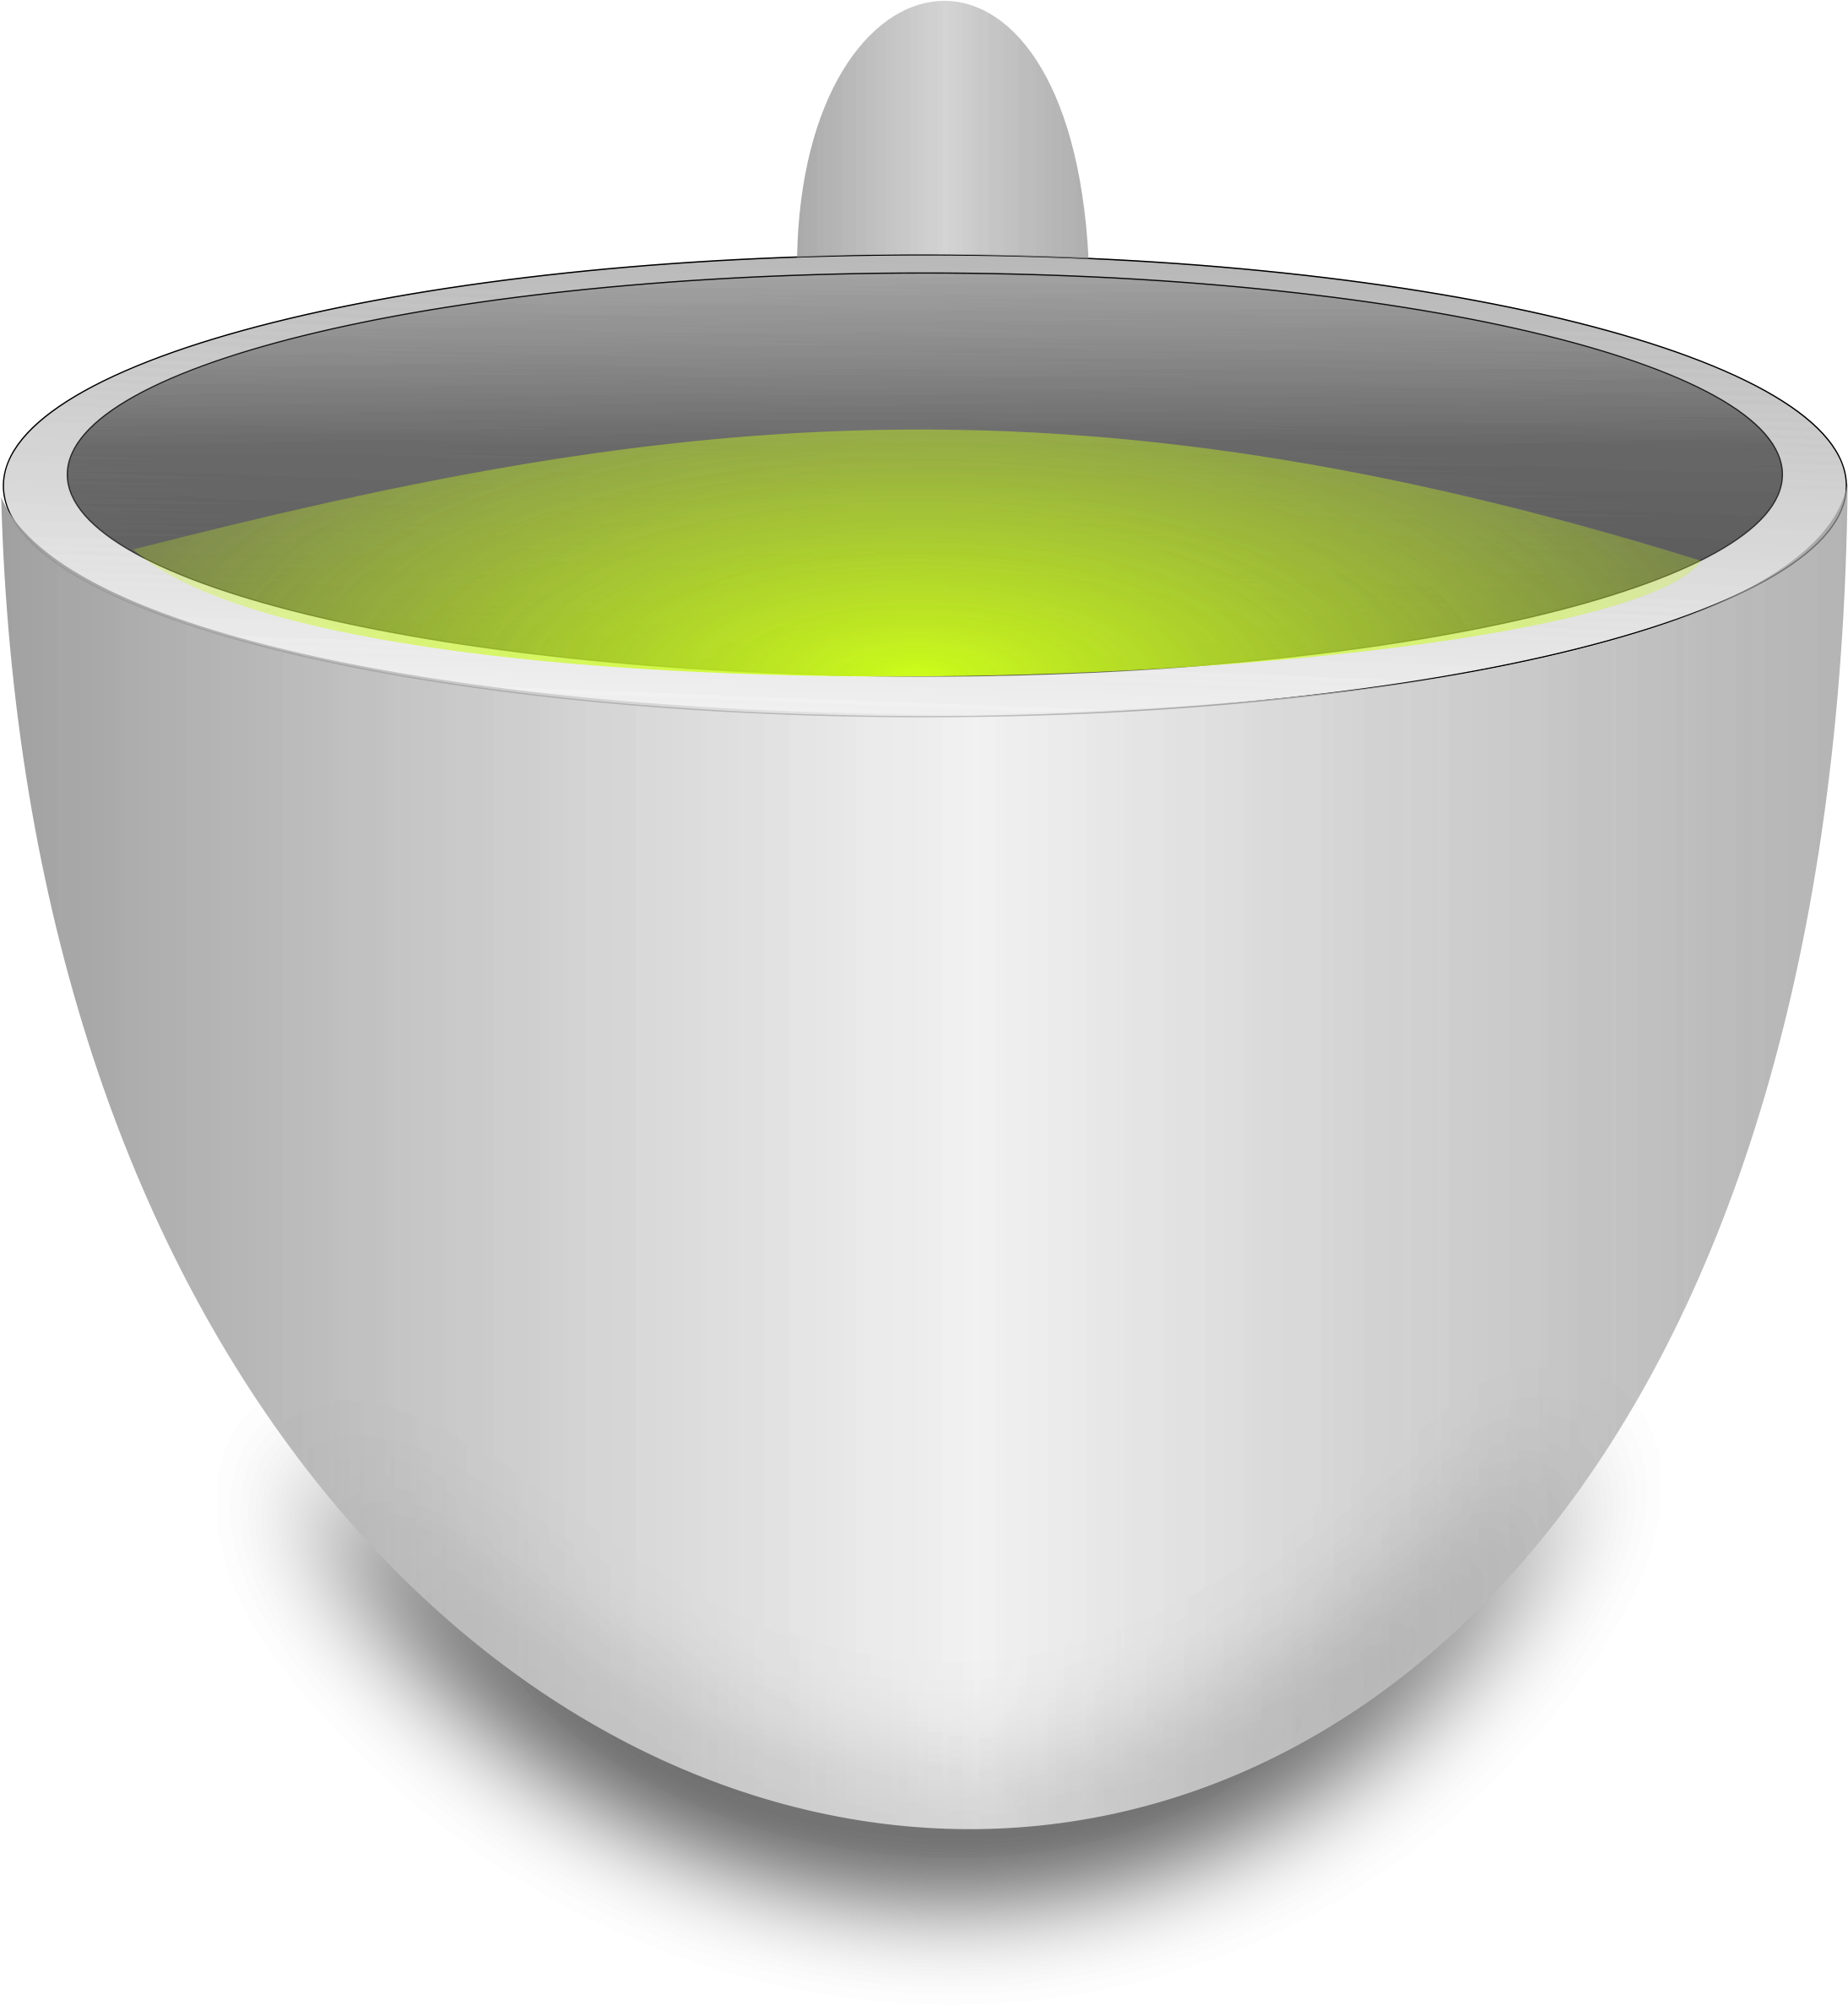 Tea Cup Clipart Green Tea - Green Tea Clipart Transparent (2188x2400)